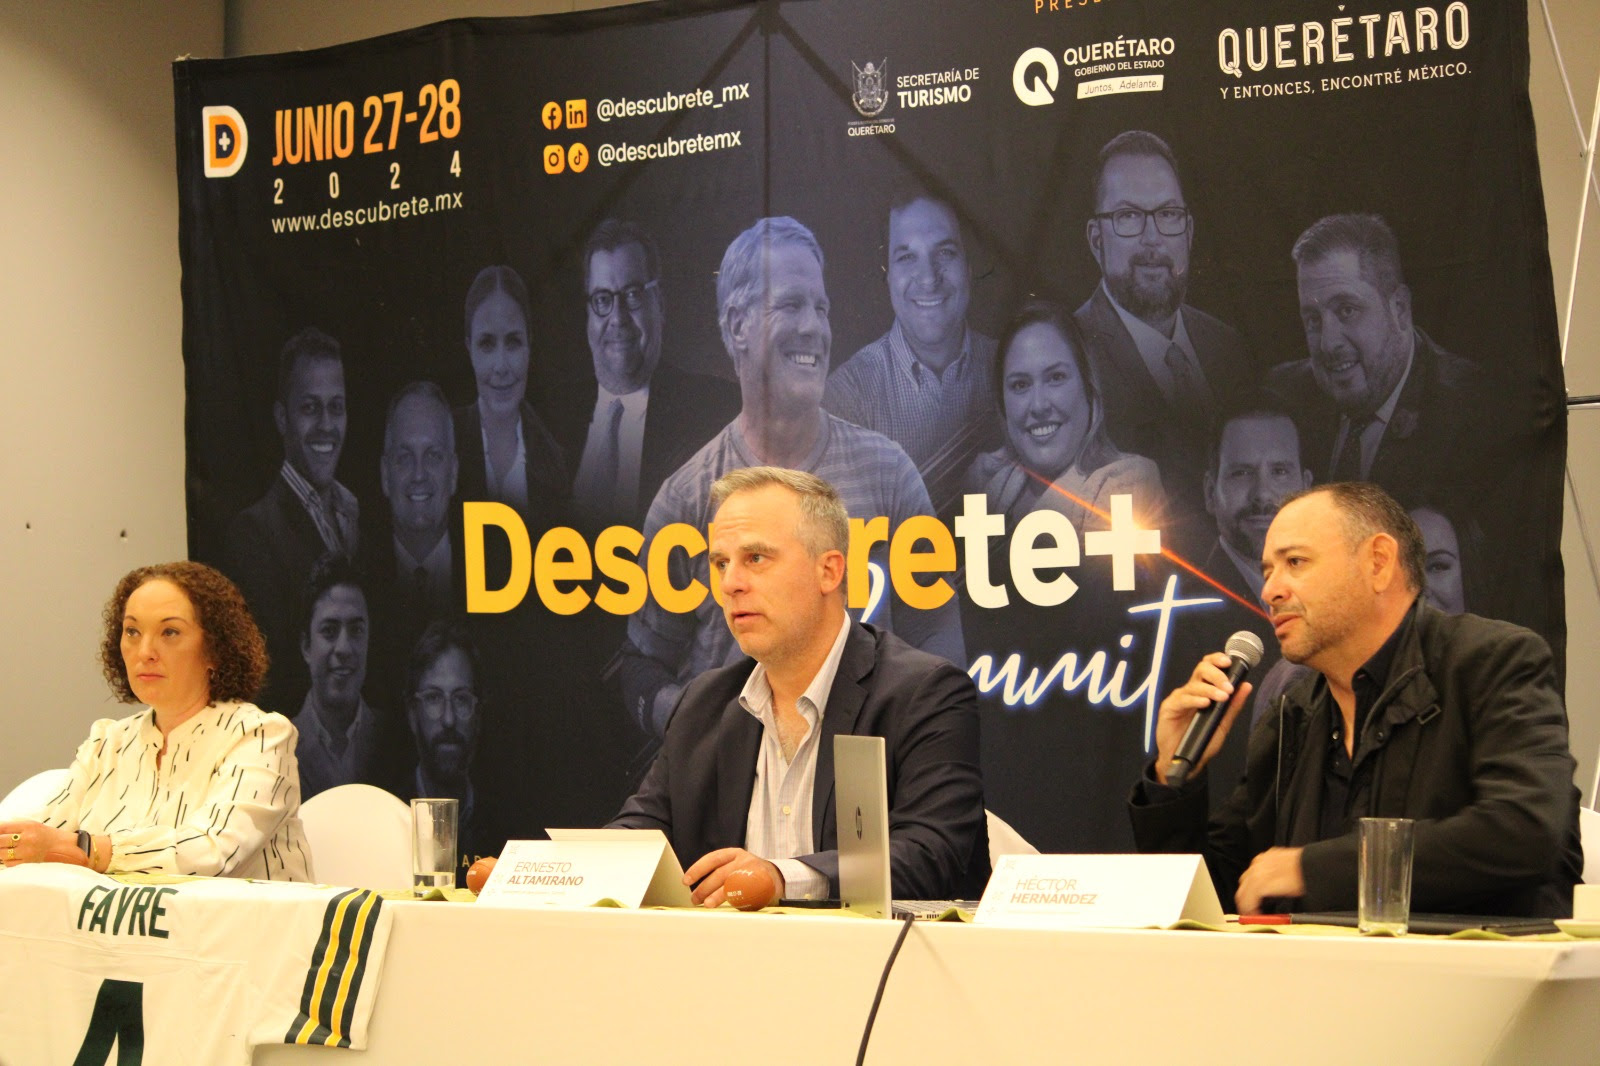 Brett Favre, leyenda de la NFL, visitará Querétaro. Foto de Secretaría de Turismo de Querétaro